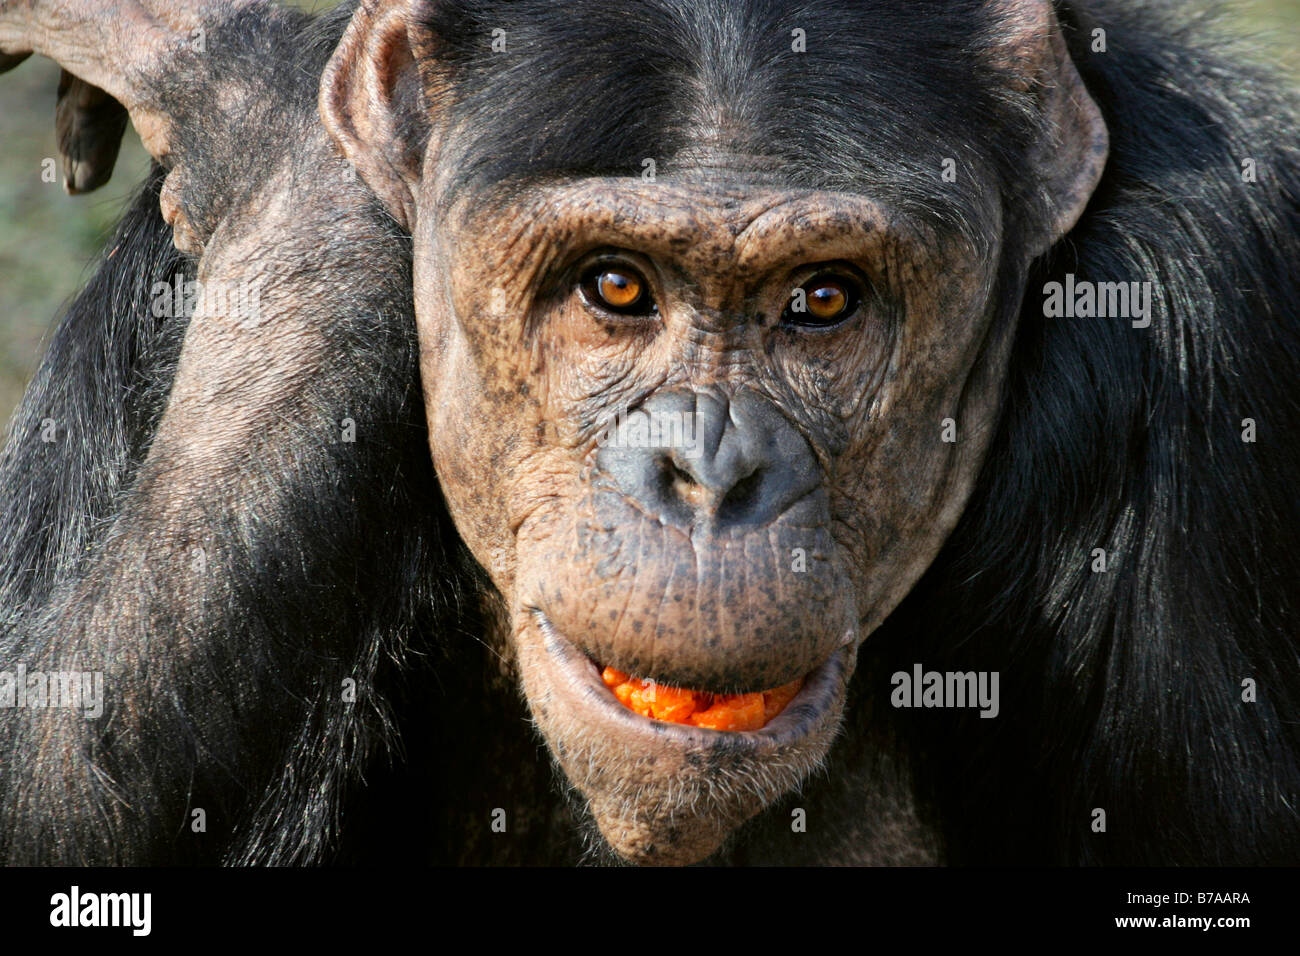 Chimpanzee (Pan troglodytes) Stock Photo